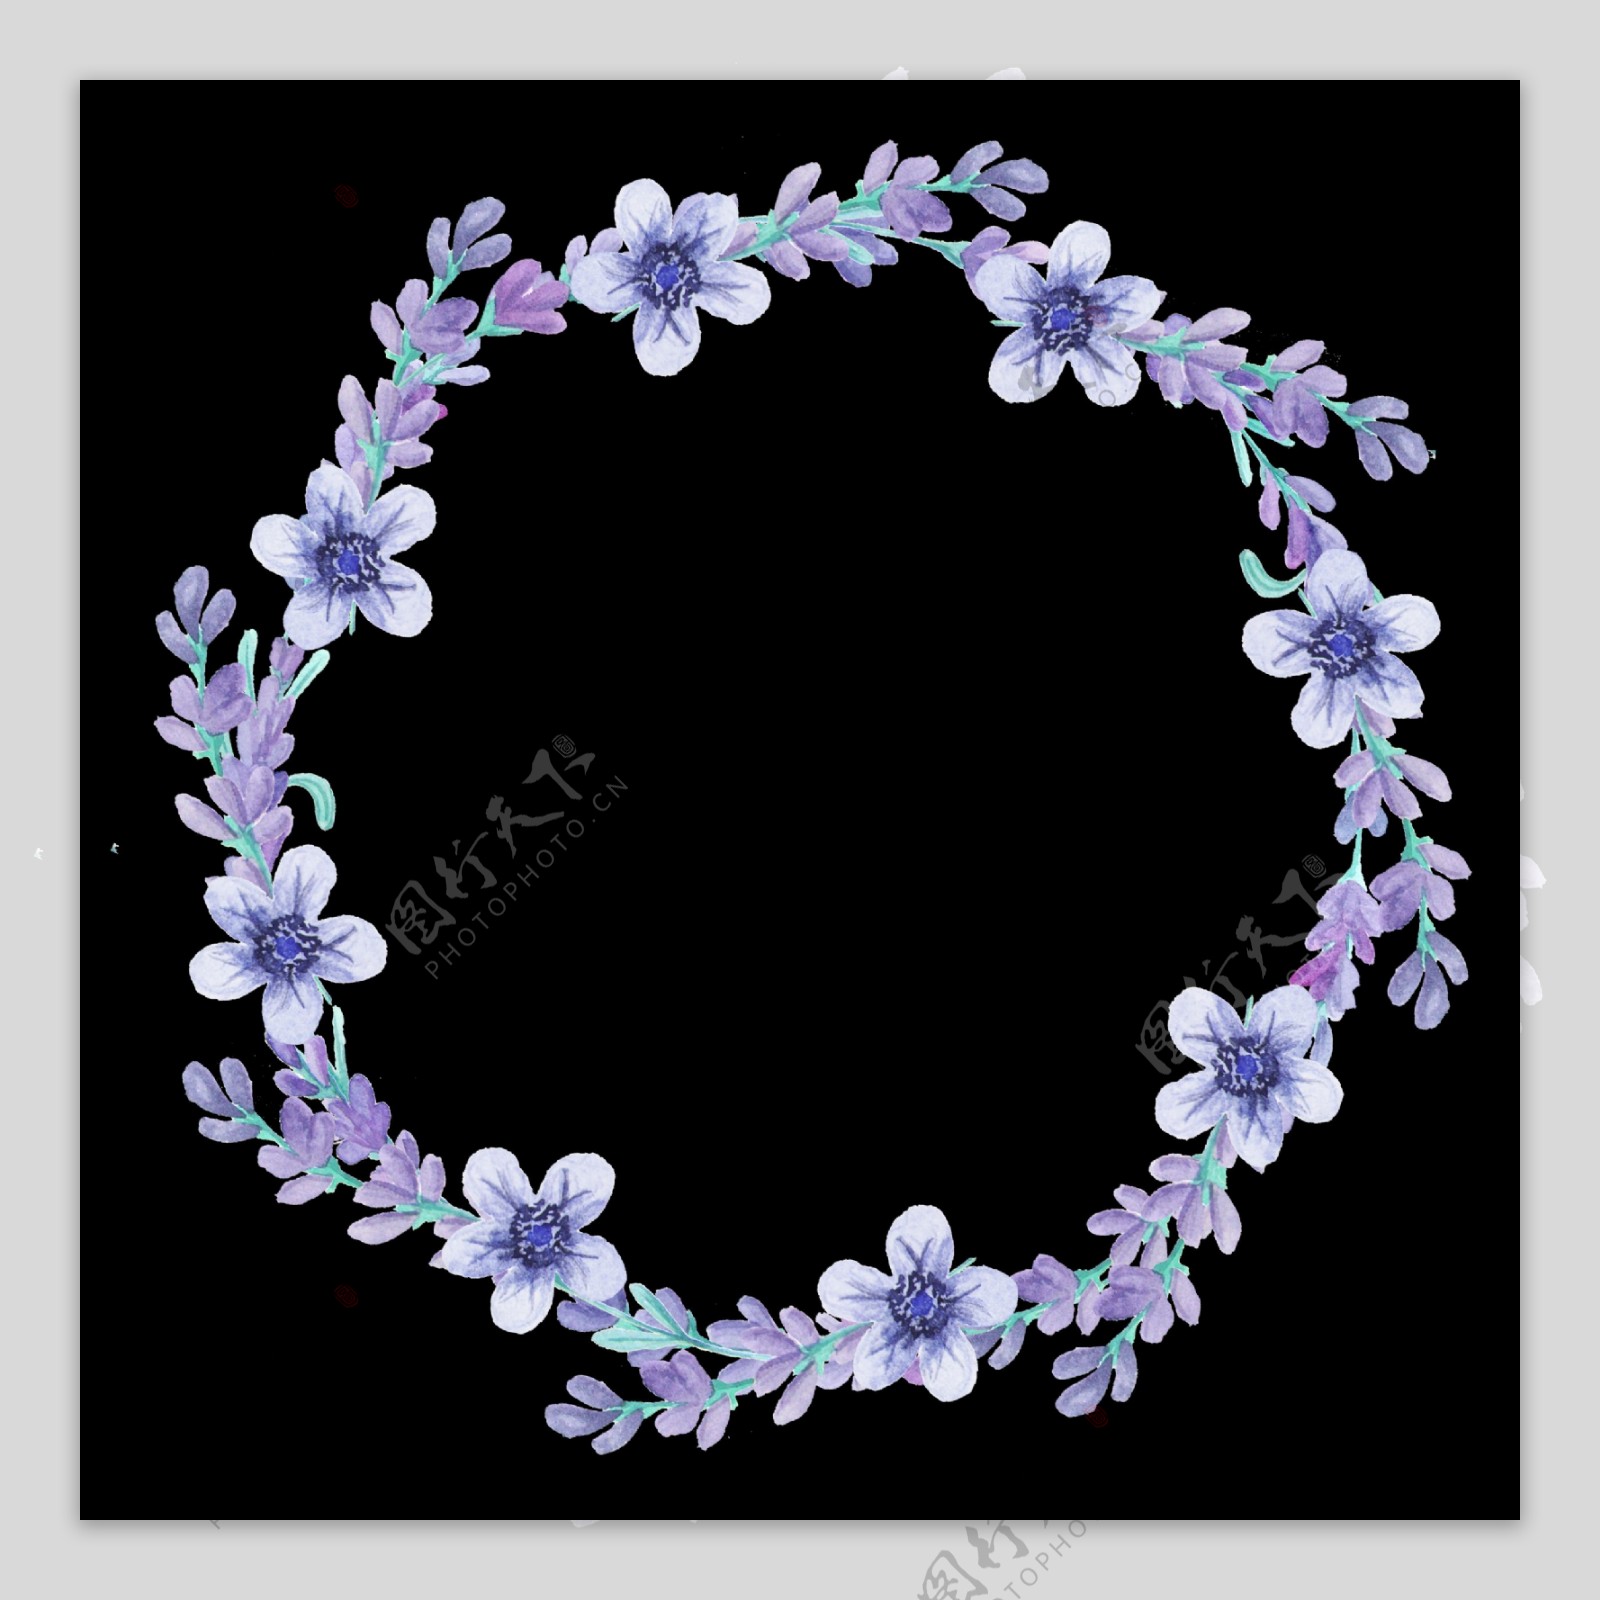 紫馨花蕊透明装饰素材